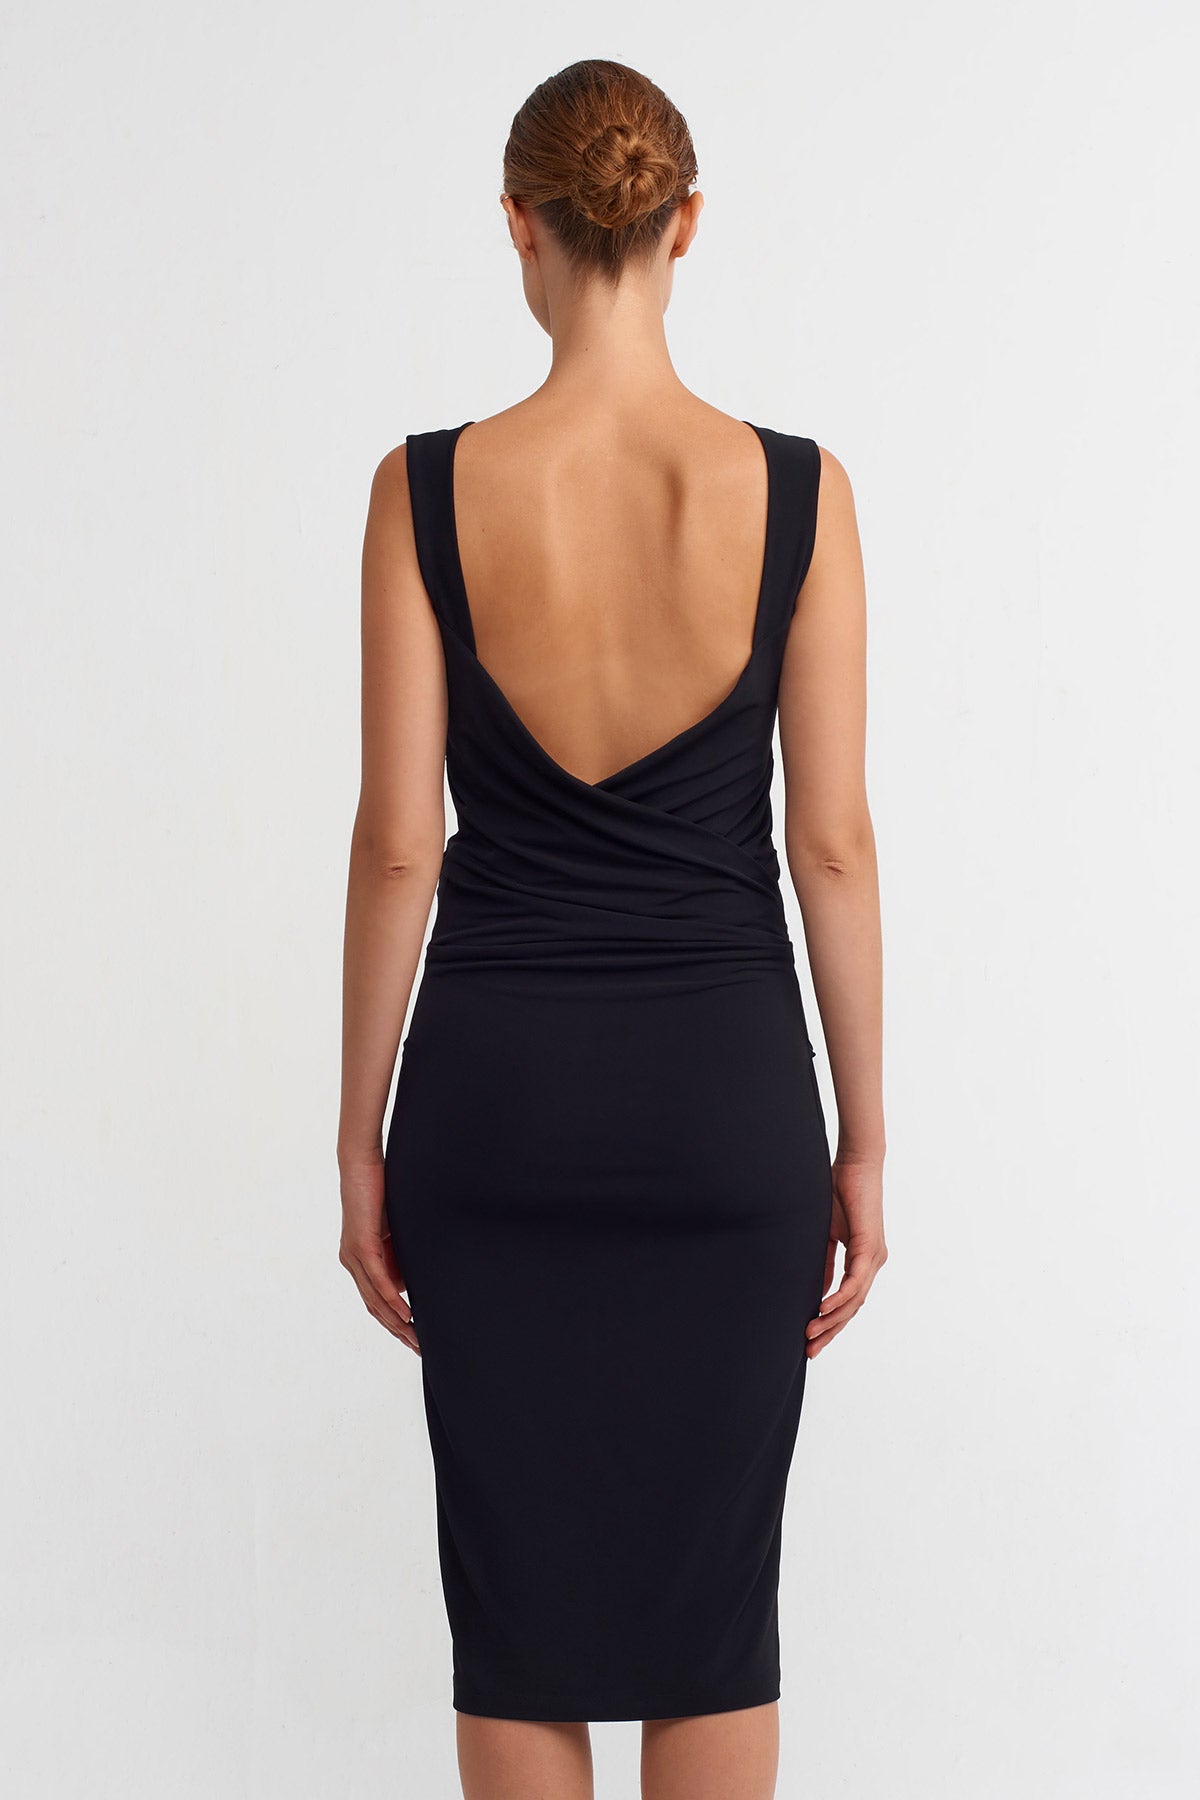 Black Drapped Neck, Backless Mini Dress-K234014081